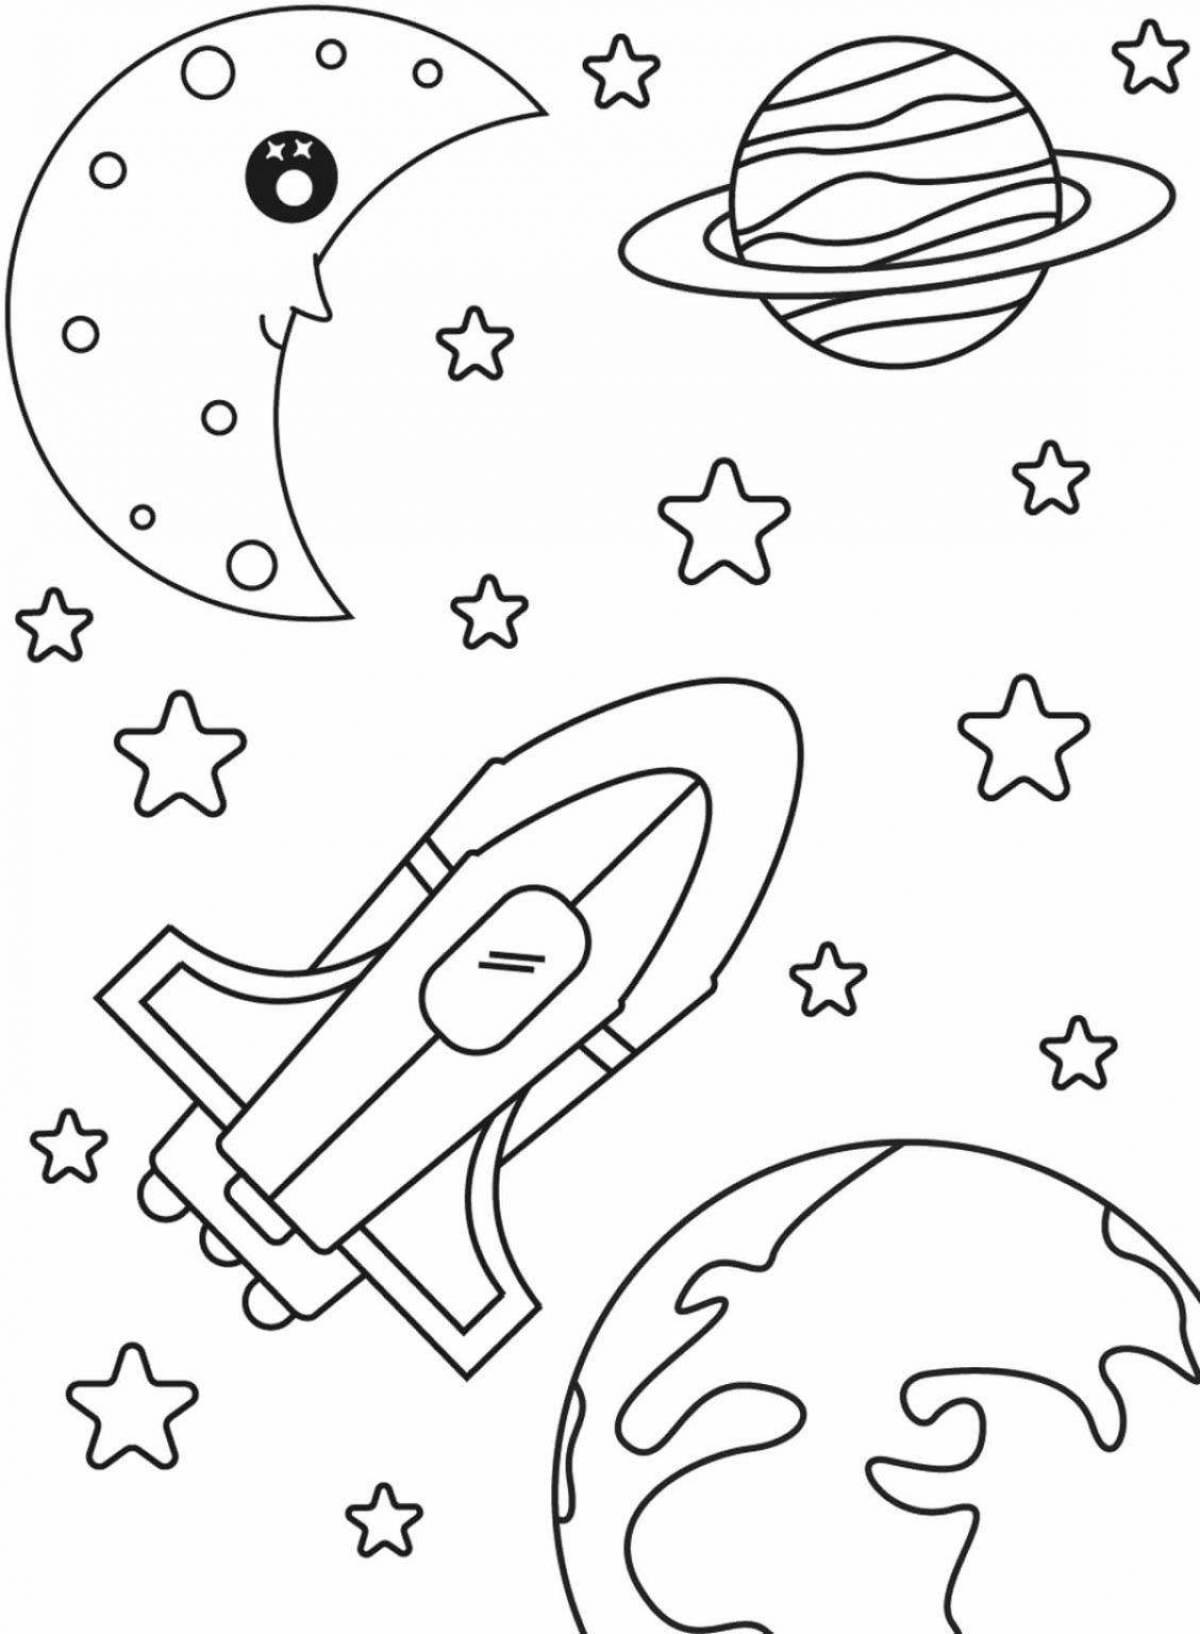 Раскраски день космонавтики для детского сада. Раскраска. В космосе. Космос раскраска для детей. Раскраски ко Дню космонавтики. Раскраска день космонавтики для детей.